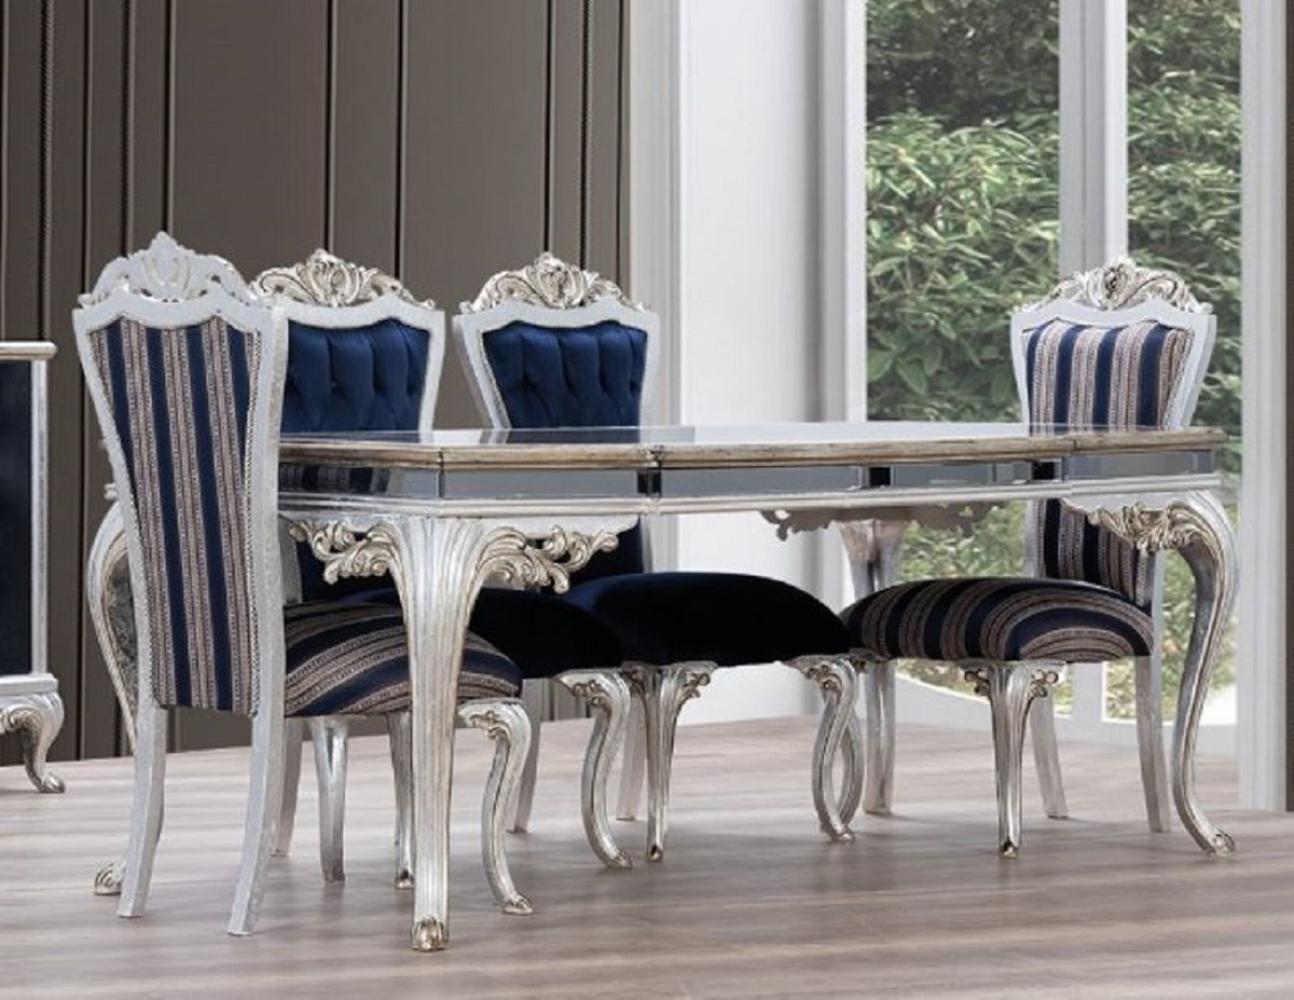 Casa Padrino Luxus Barock Esszimmer Set Blau / Silber - 1 Esstisch & 6 Esszimmerstühle - Handgefertigte Barock Esszimmer Möbel Bild 1